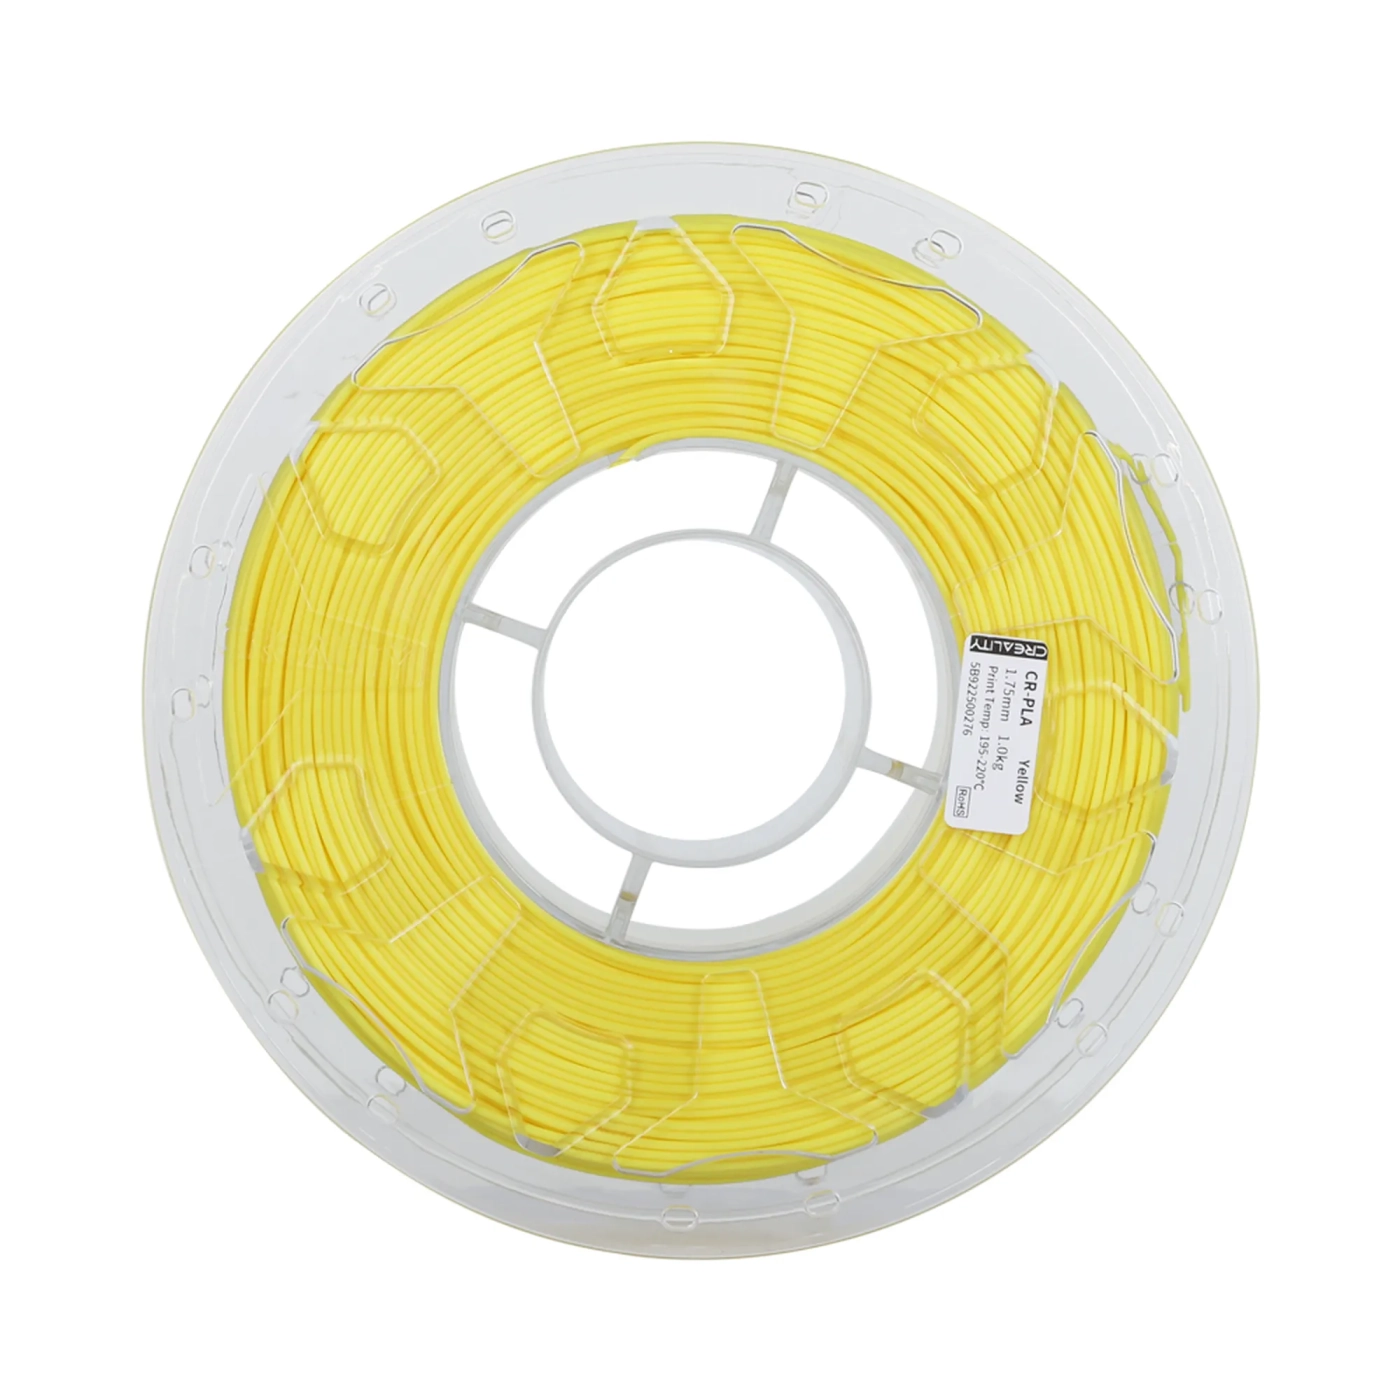 Купить PLA Filament (пластик) для 3D принтера CREALITY 1кг, 1.75мм, желтый - фото 2